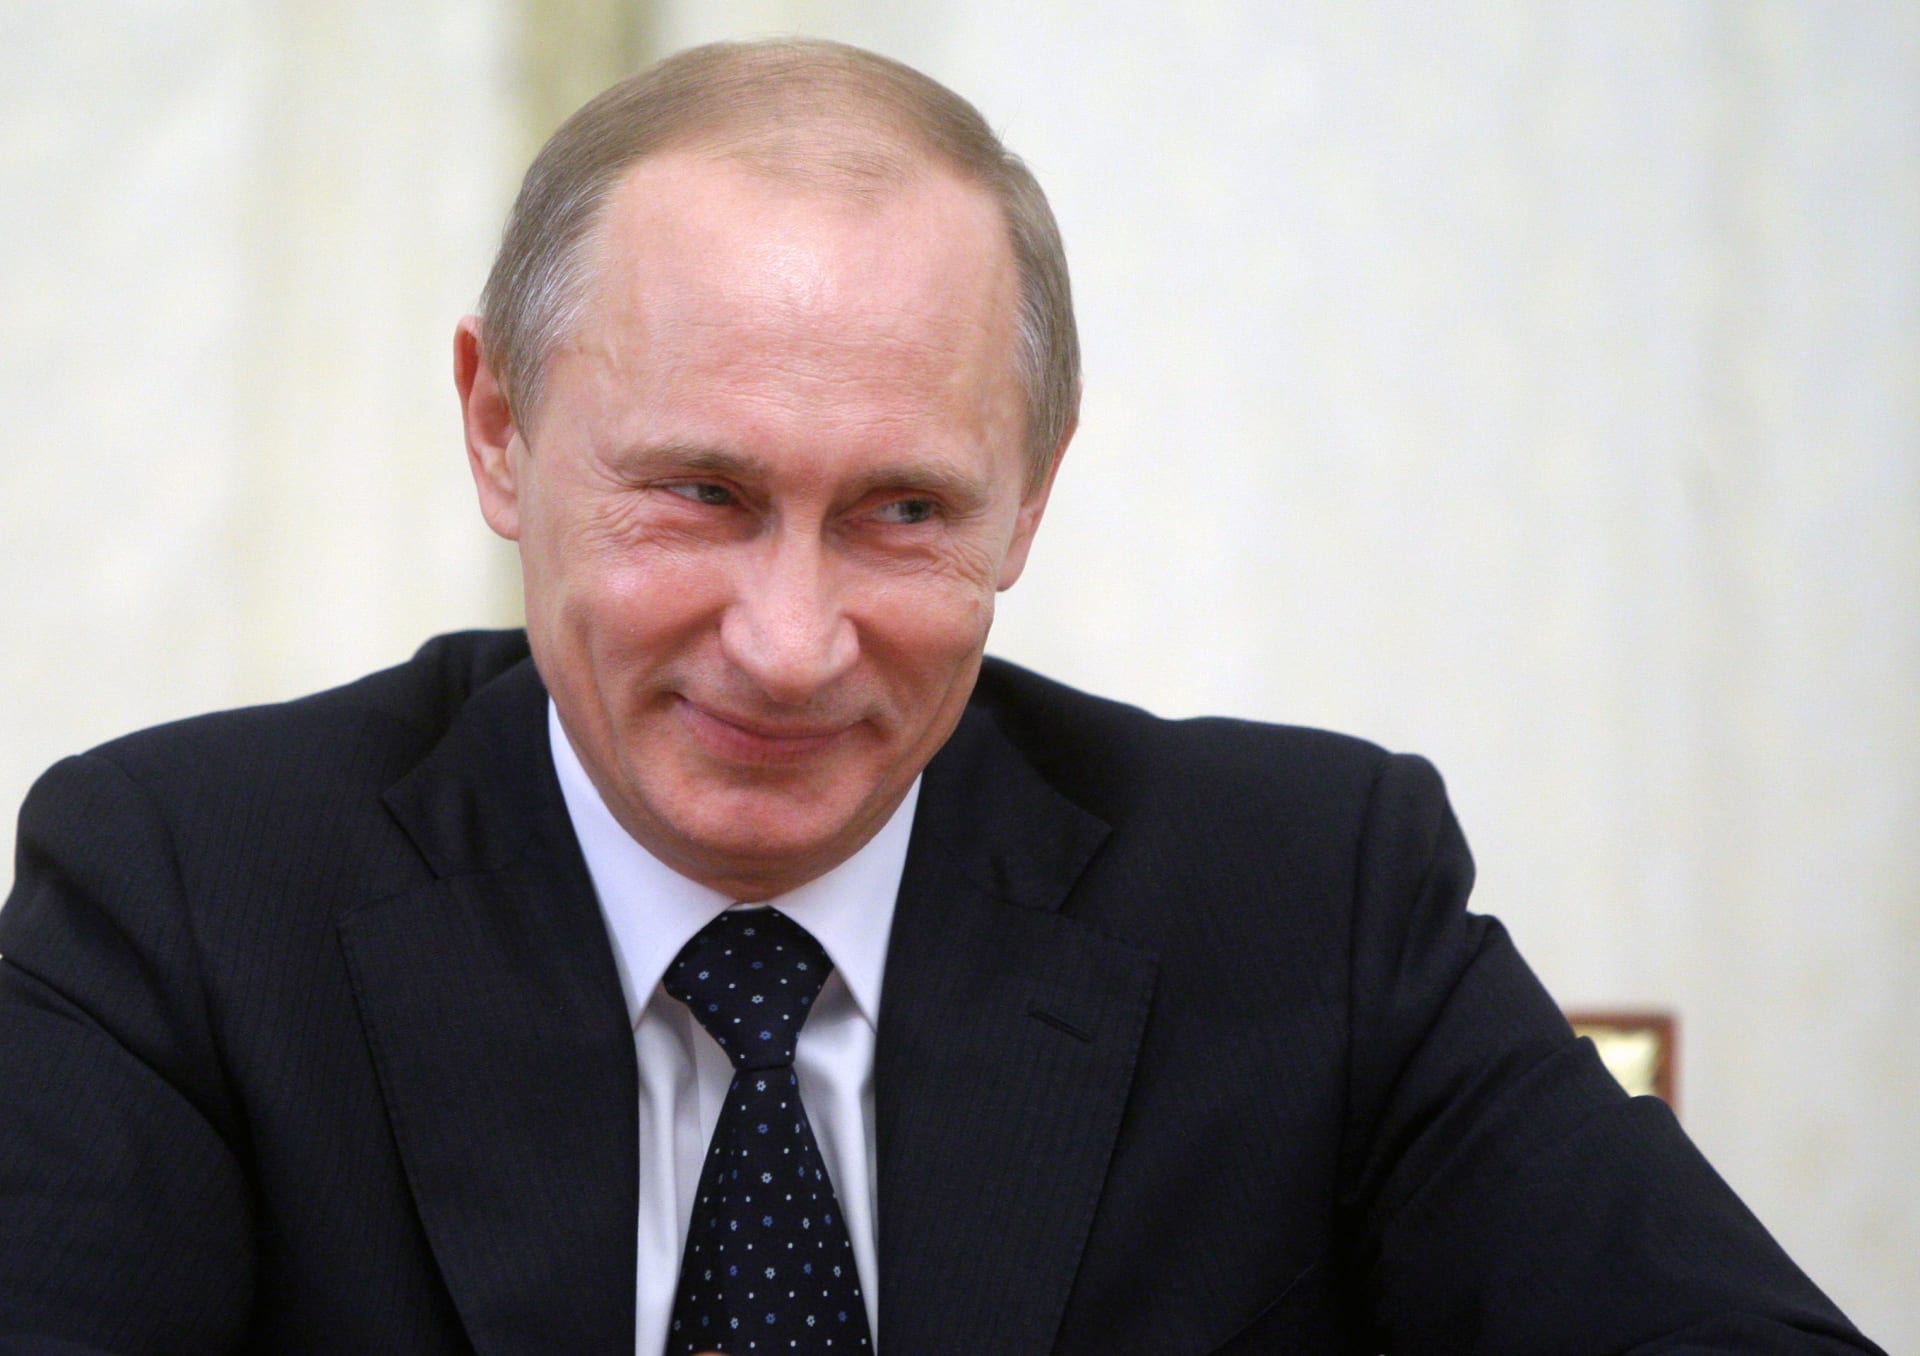 روسيا: حزب بوتين "روسية الموحدة" ينتصر بأغلبية الأصوات في الانتخابات البرلمانية